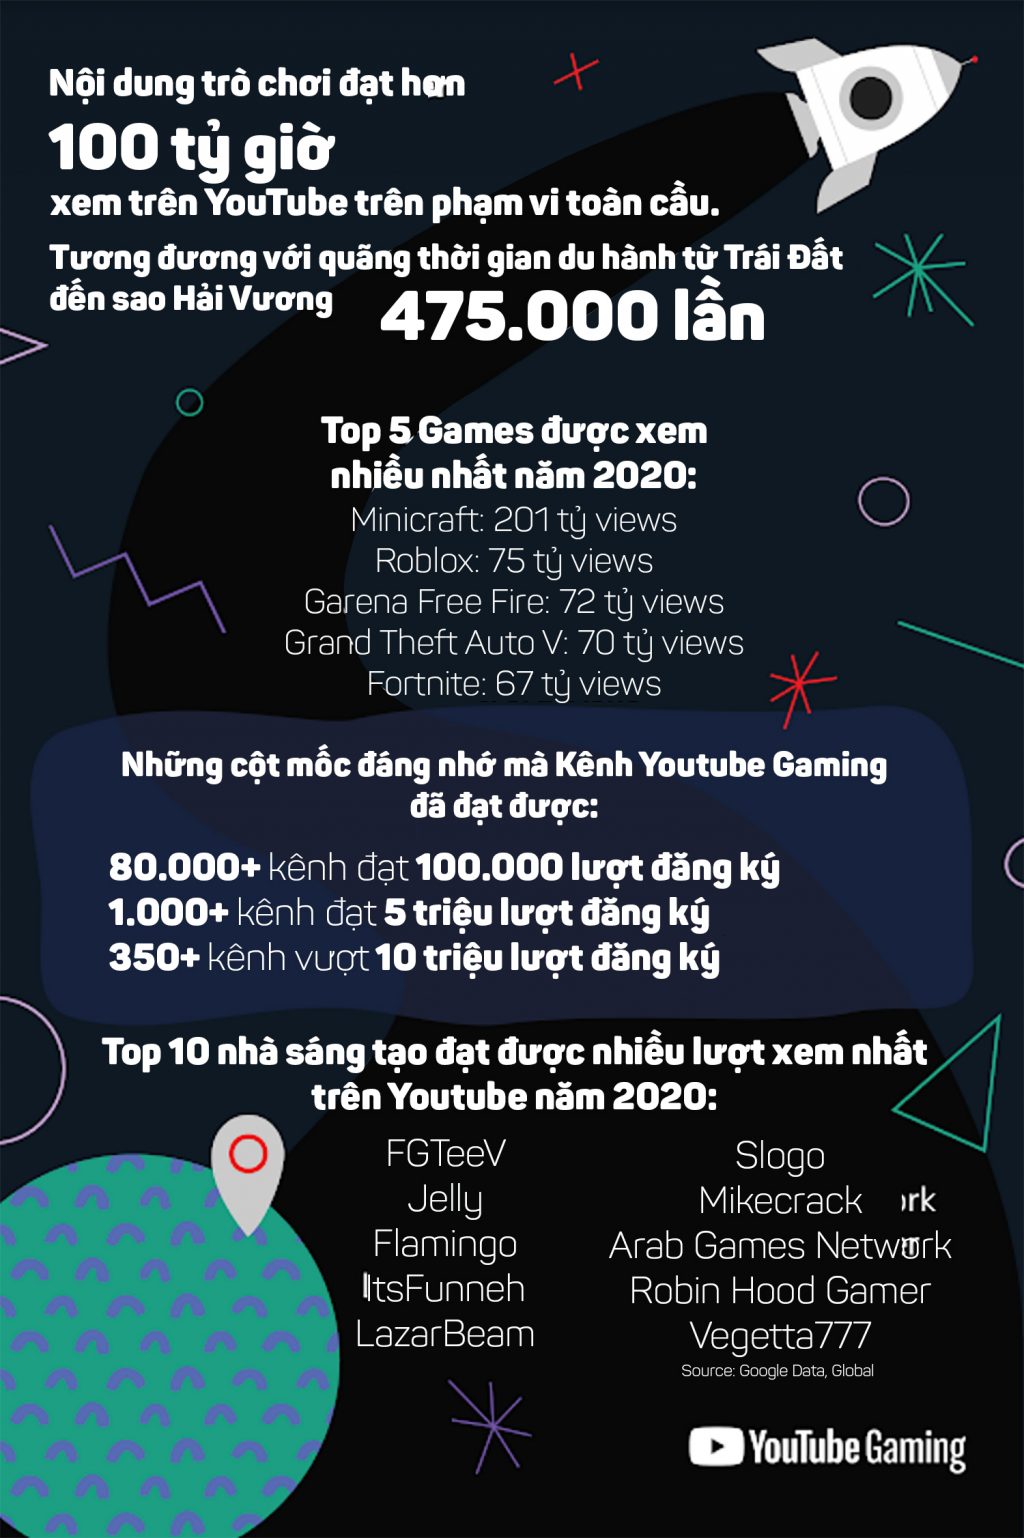 YouTube Gaming đạt hơn 100 tỷ giờ xem năm 2020: Sự trỗi dậy mạnh mẽ của văn hóa chơi game